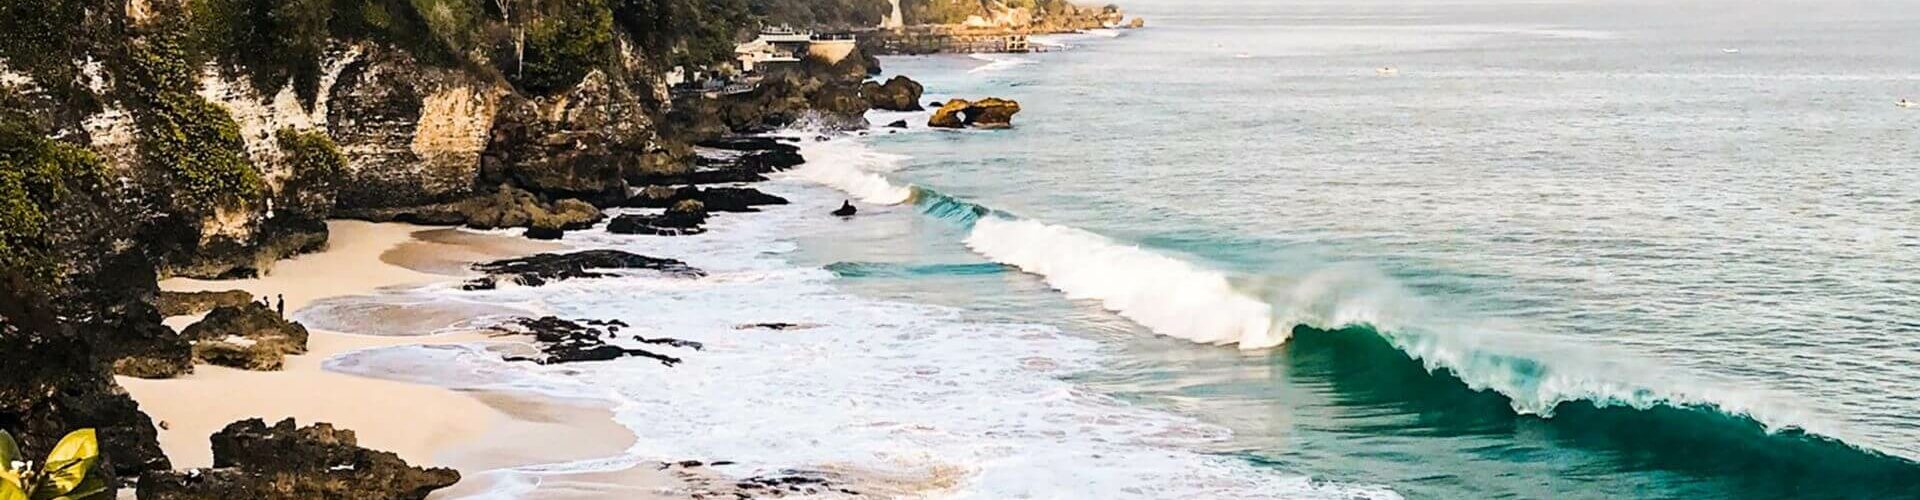 Wann gibt es die besten Wellen auf Bali